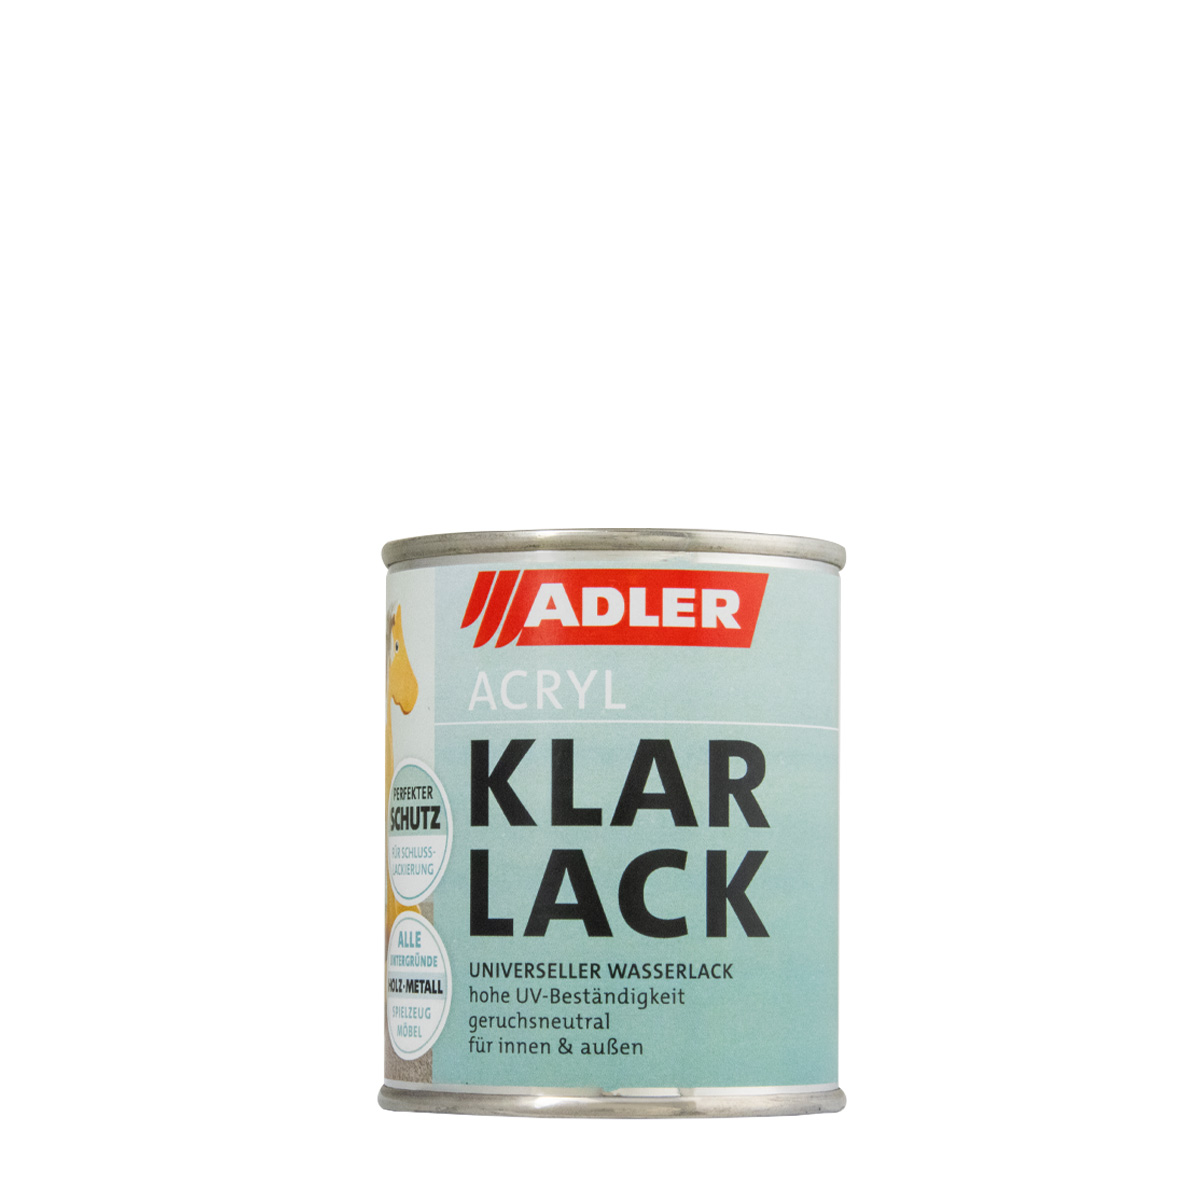 adler_acryl-klarlack_125ml_gross